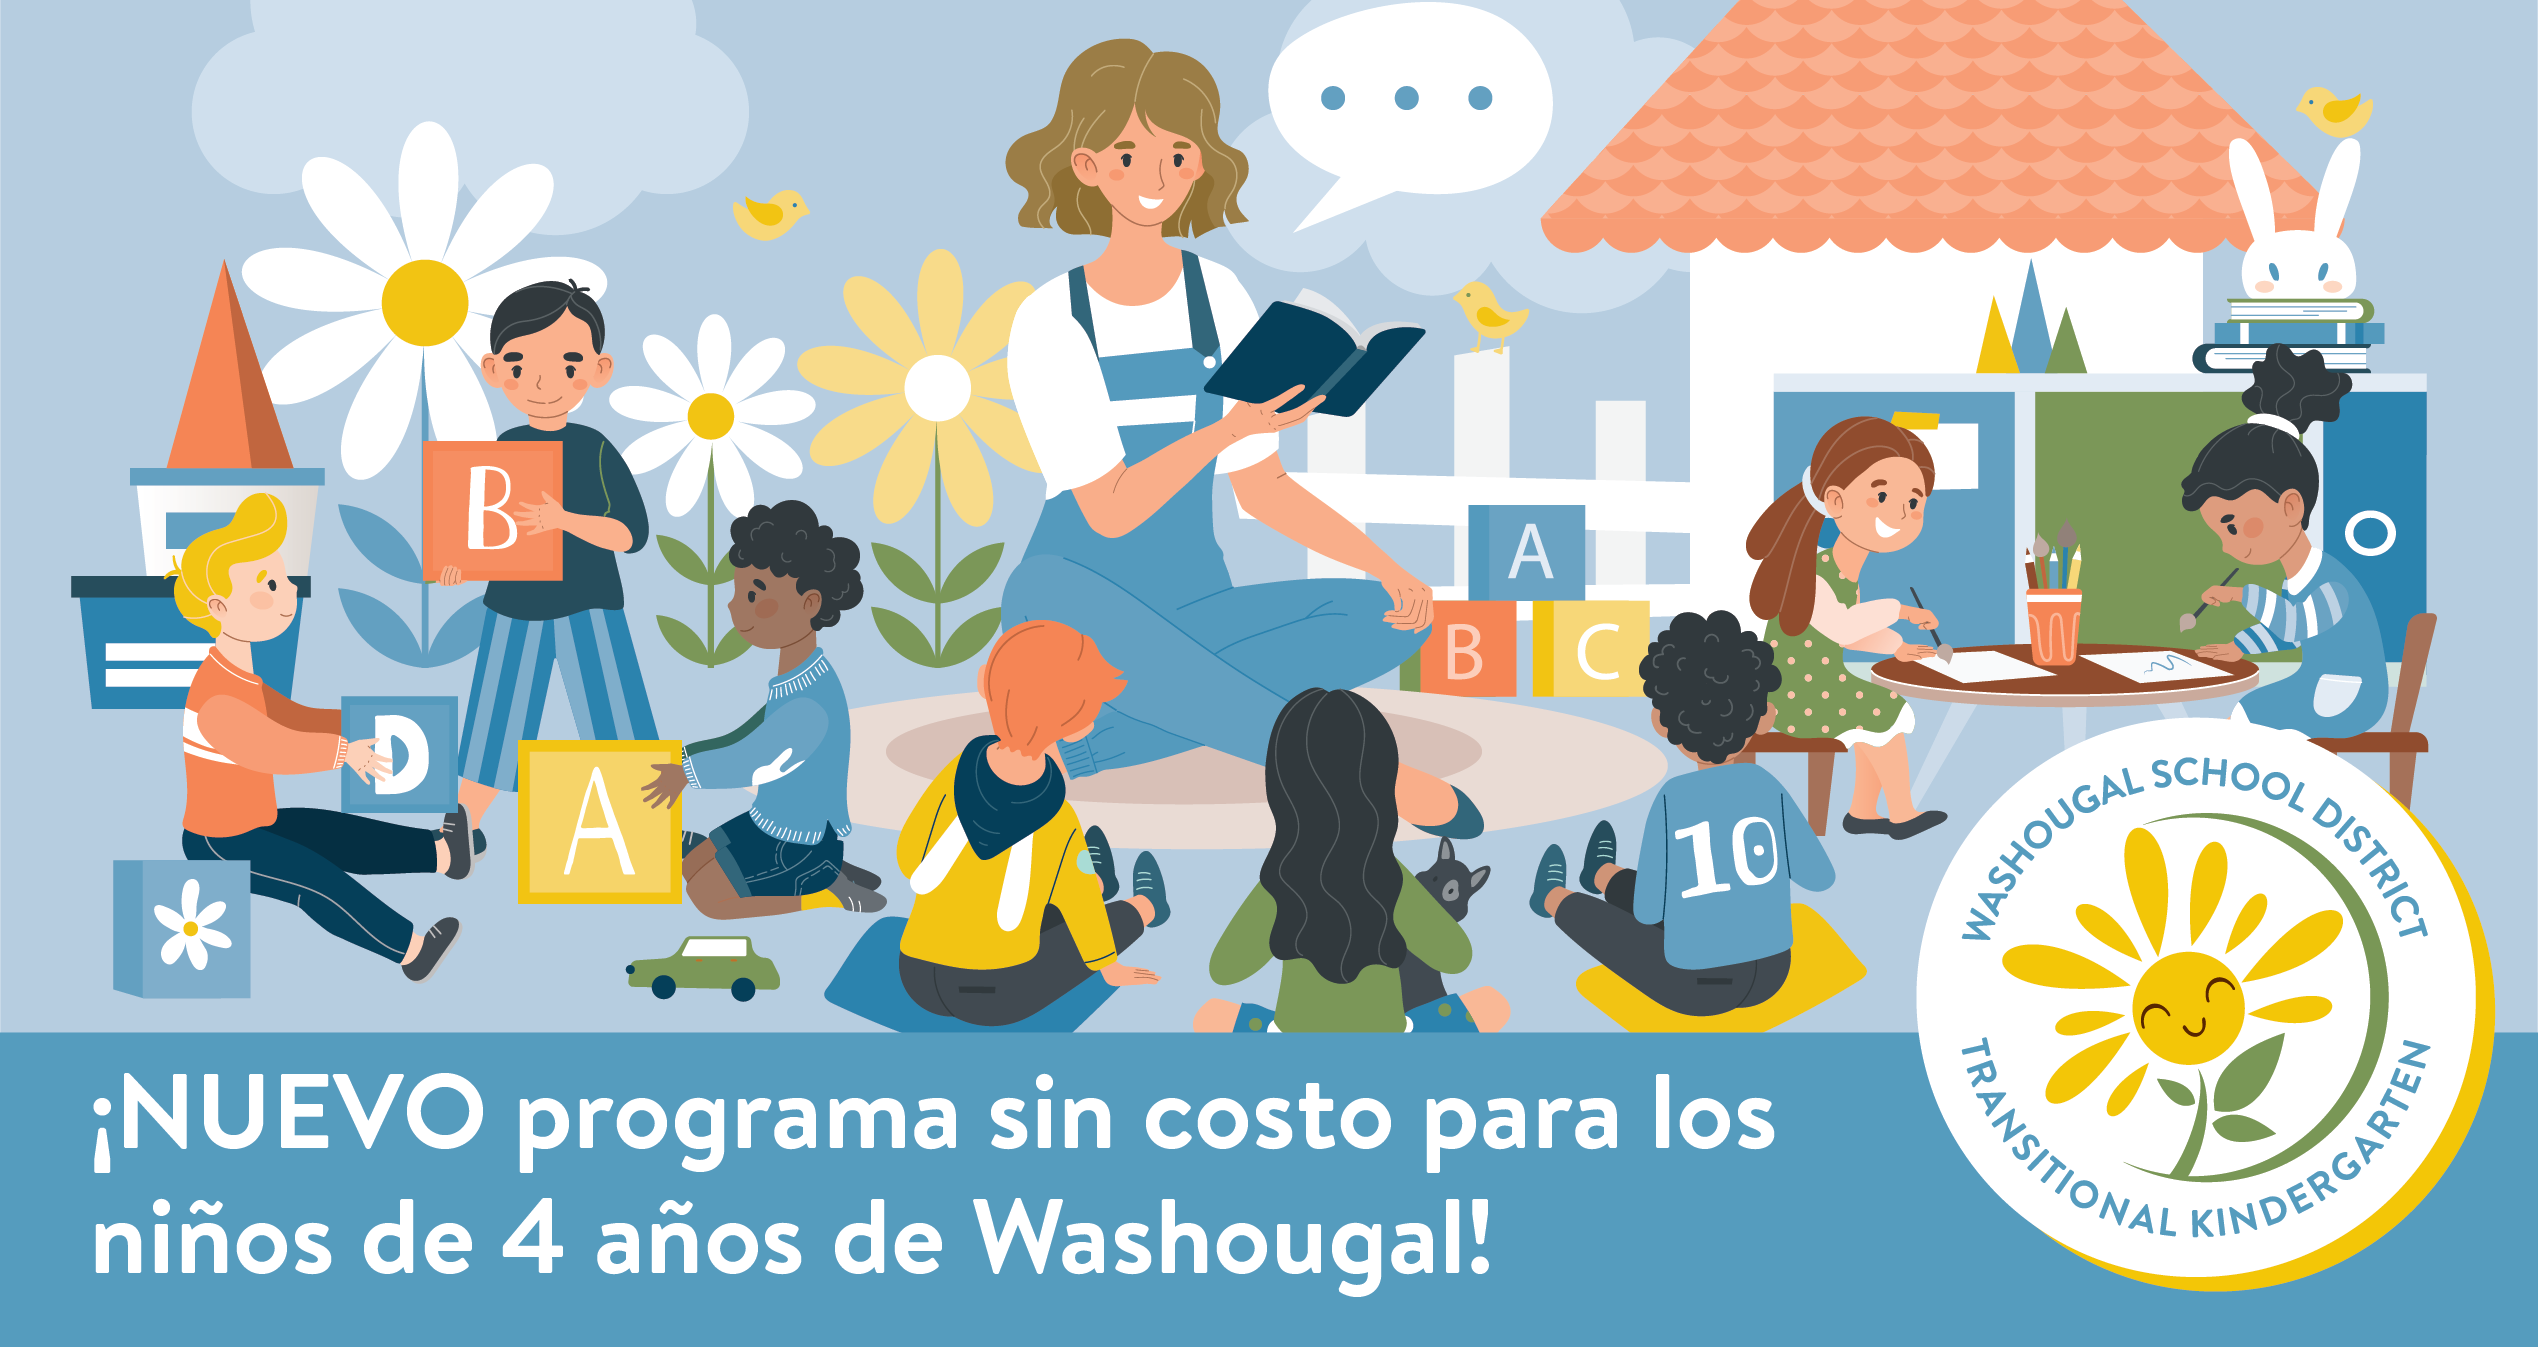 Kindergarten de transición de Washougal: Una nueva opción de aprendizaje temprano en el Distrito Escolar de Washougal con ninos y maestra 